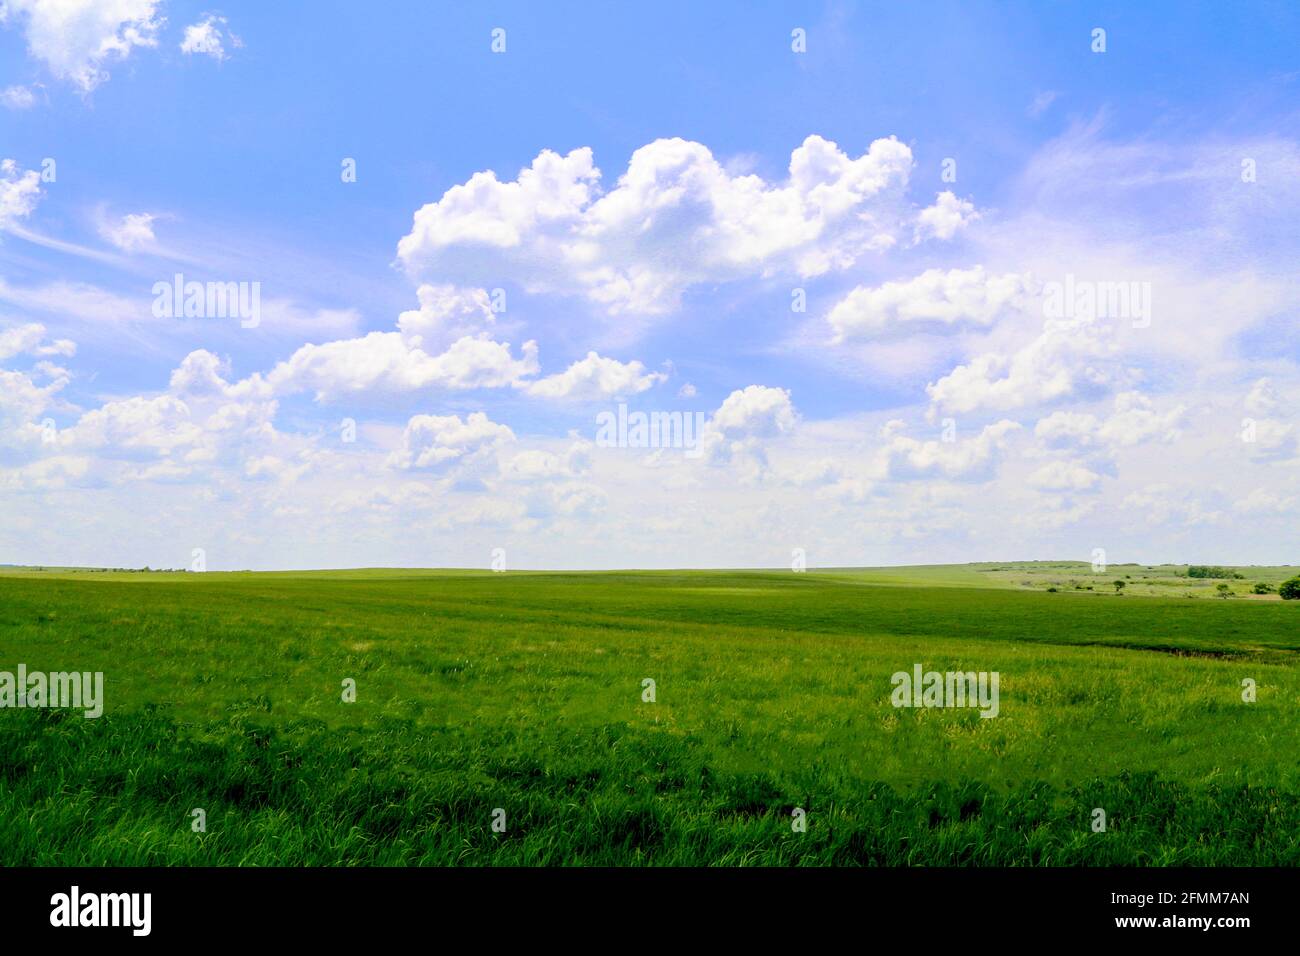 campagna rurale fattoria prato campo pascolo con cielo blu luminoso e nuvole bianche soffici sparate come una scena di paesaggio Foto Stock